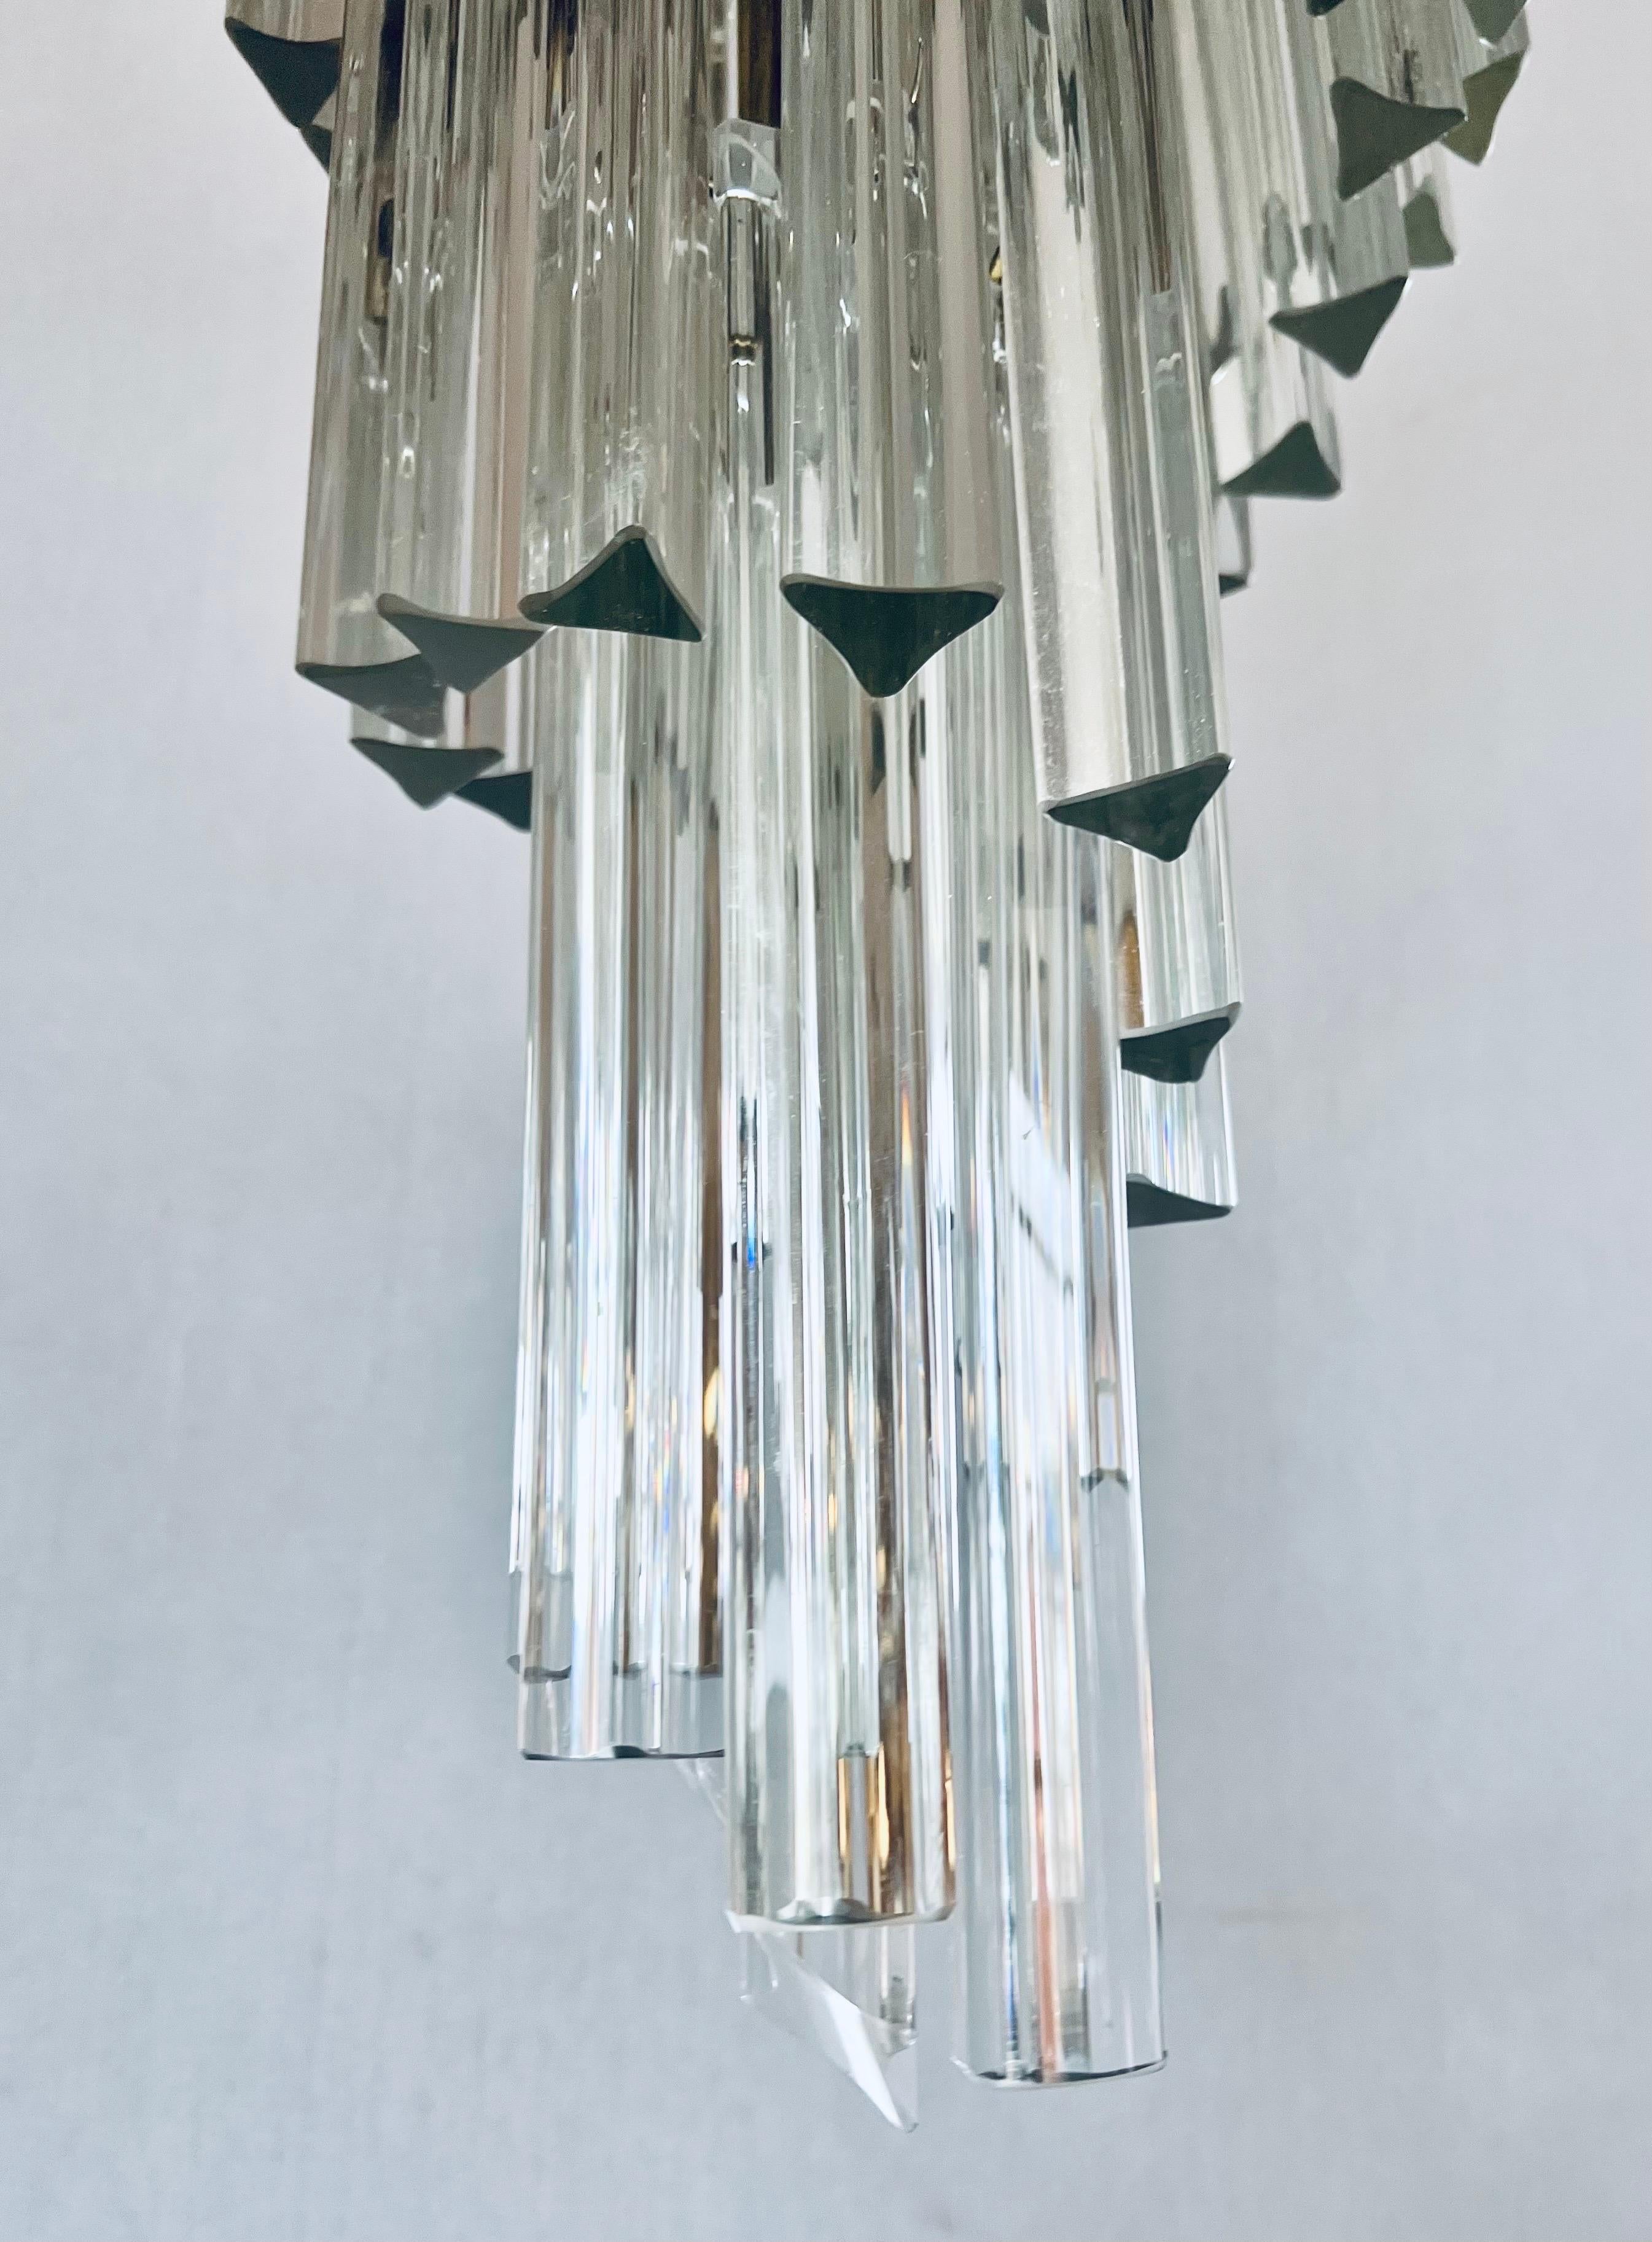 Atemberaubende Mitte des Jahrhunderts moderne Camer Glas Prisma Kronleuchter mit Spirale fließen.
Jedes der Prismen ist abnehmbar. Insgesamt sechs Lichter. Warum nicht das Beste besitzen.
Für die USA verkabelt und in einwandfreiem Zustand.